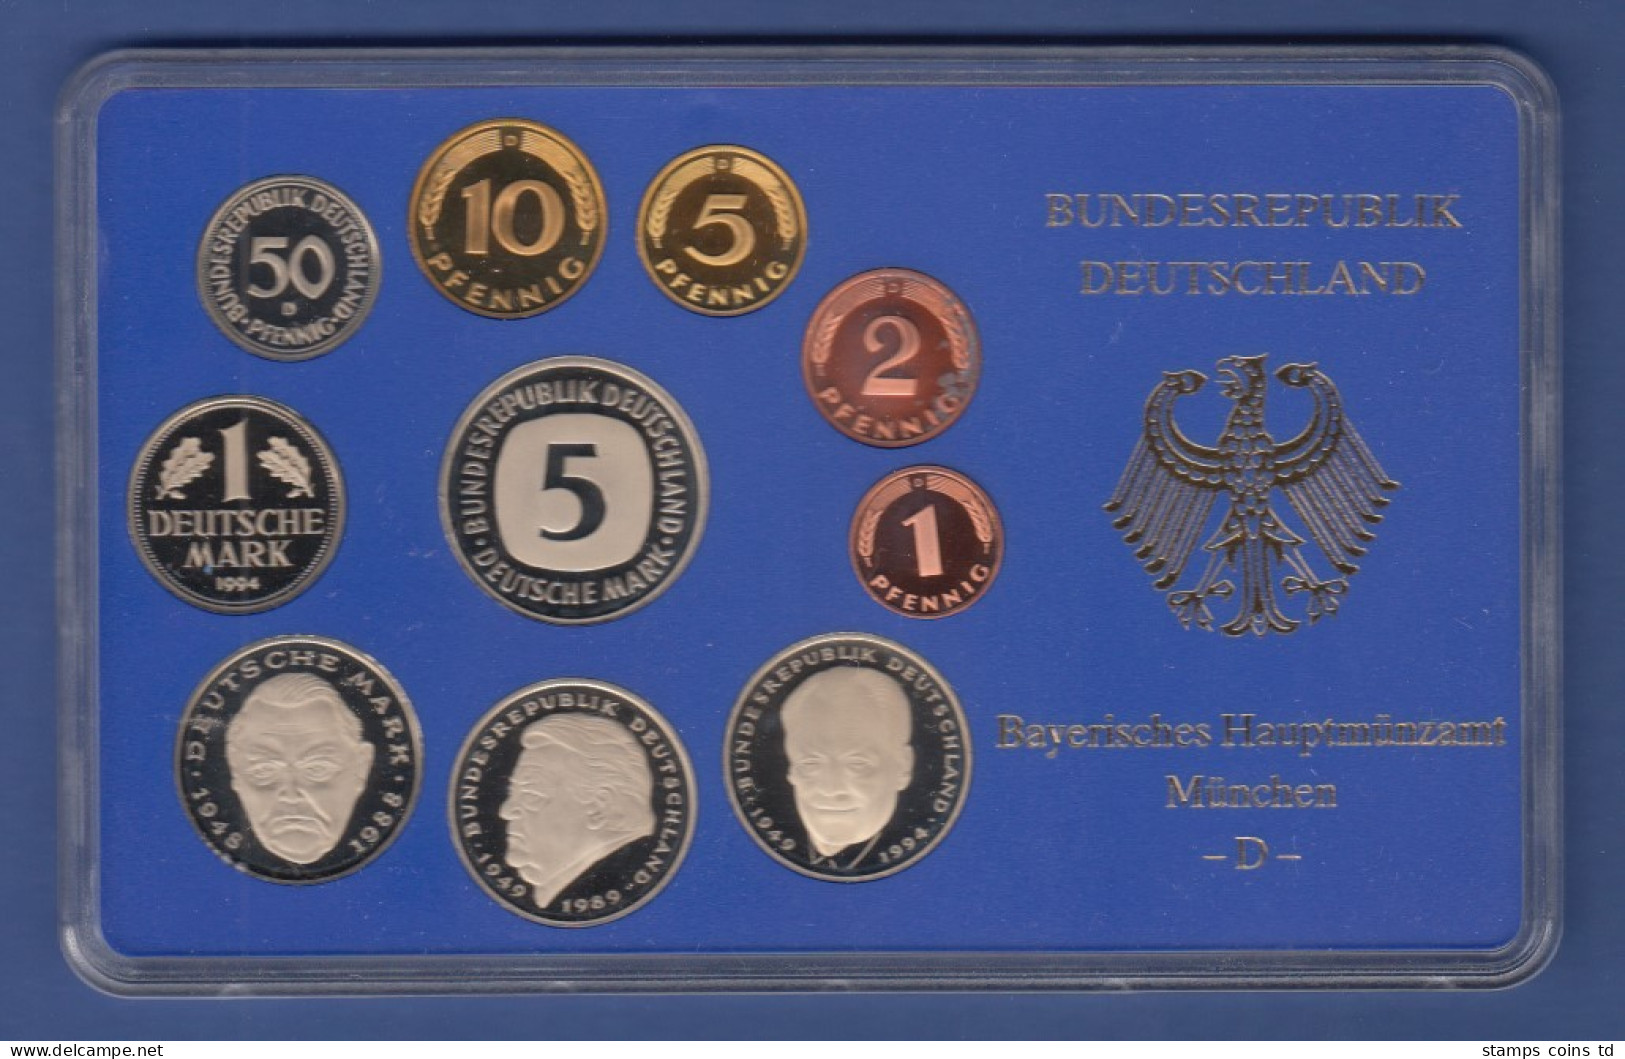 Bundesrepublik DM-Kursmünzensatz 1994 D Polierte Platte PP - Mint Sets & Proof Sets